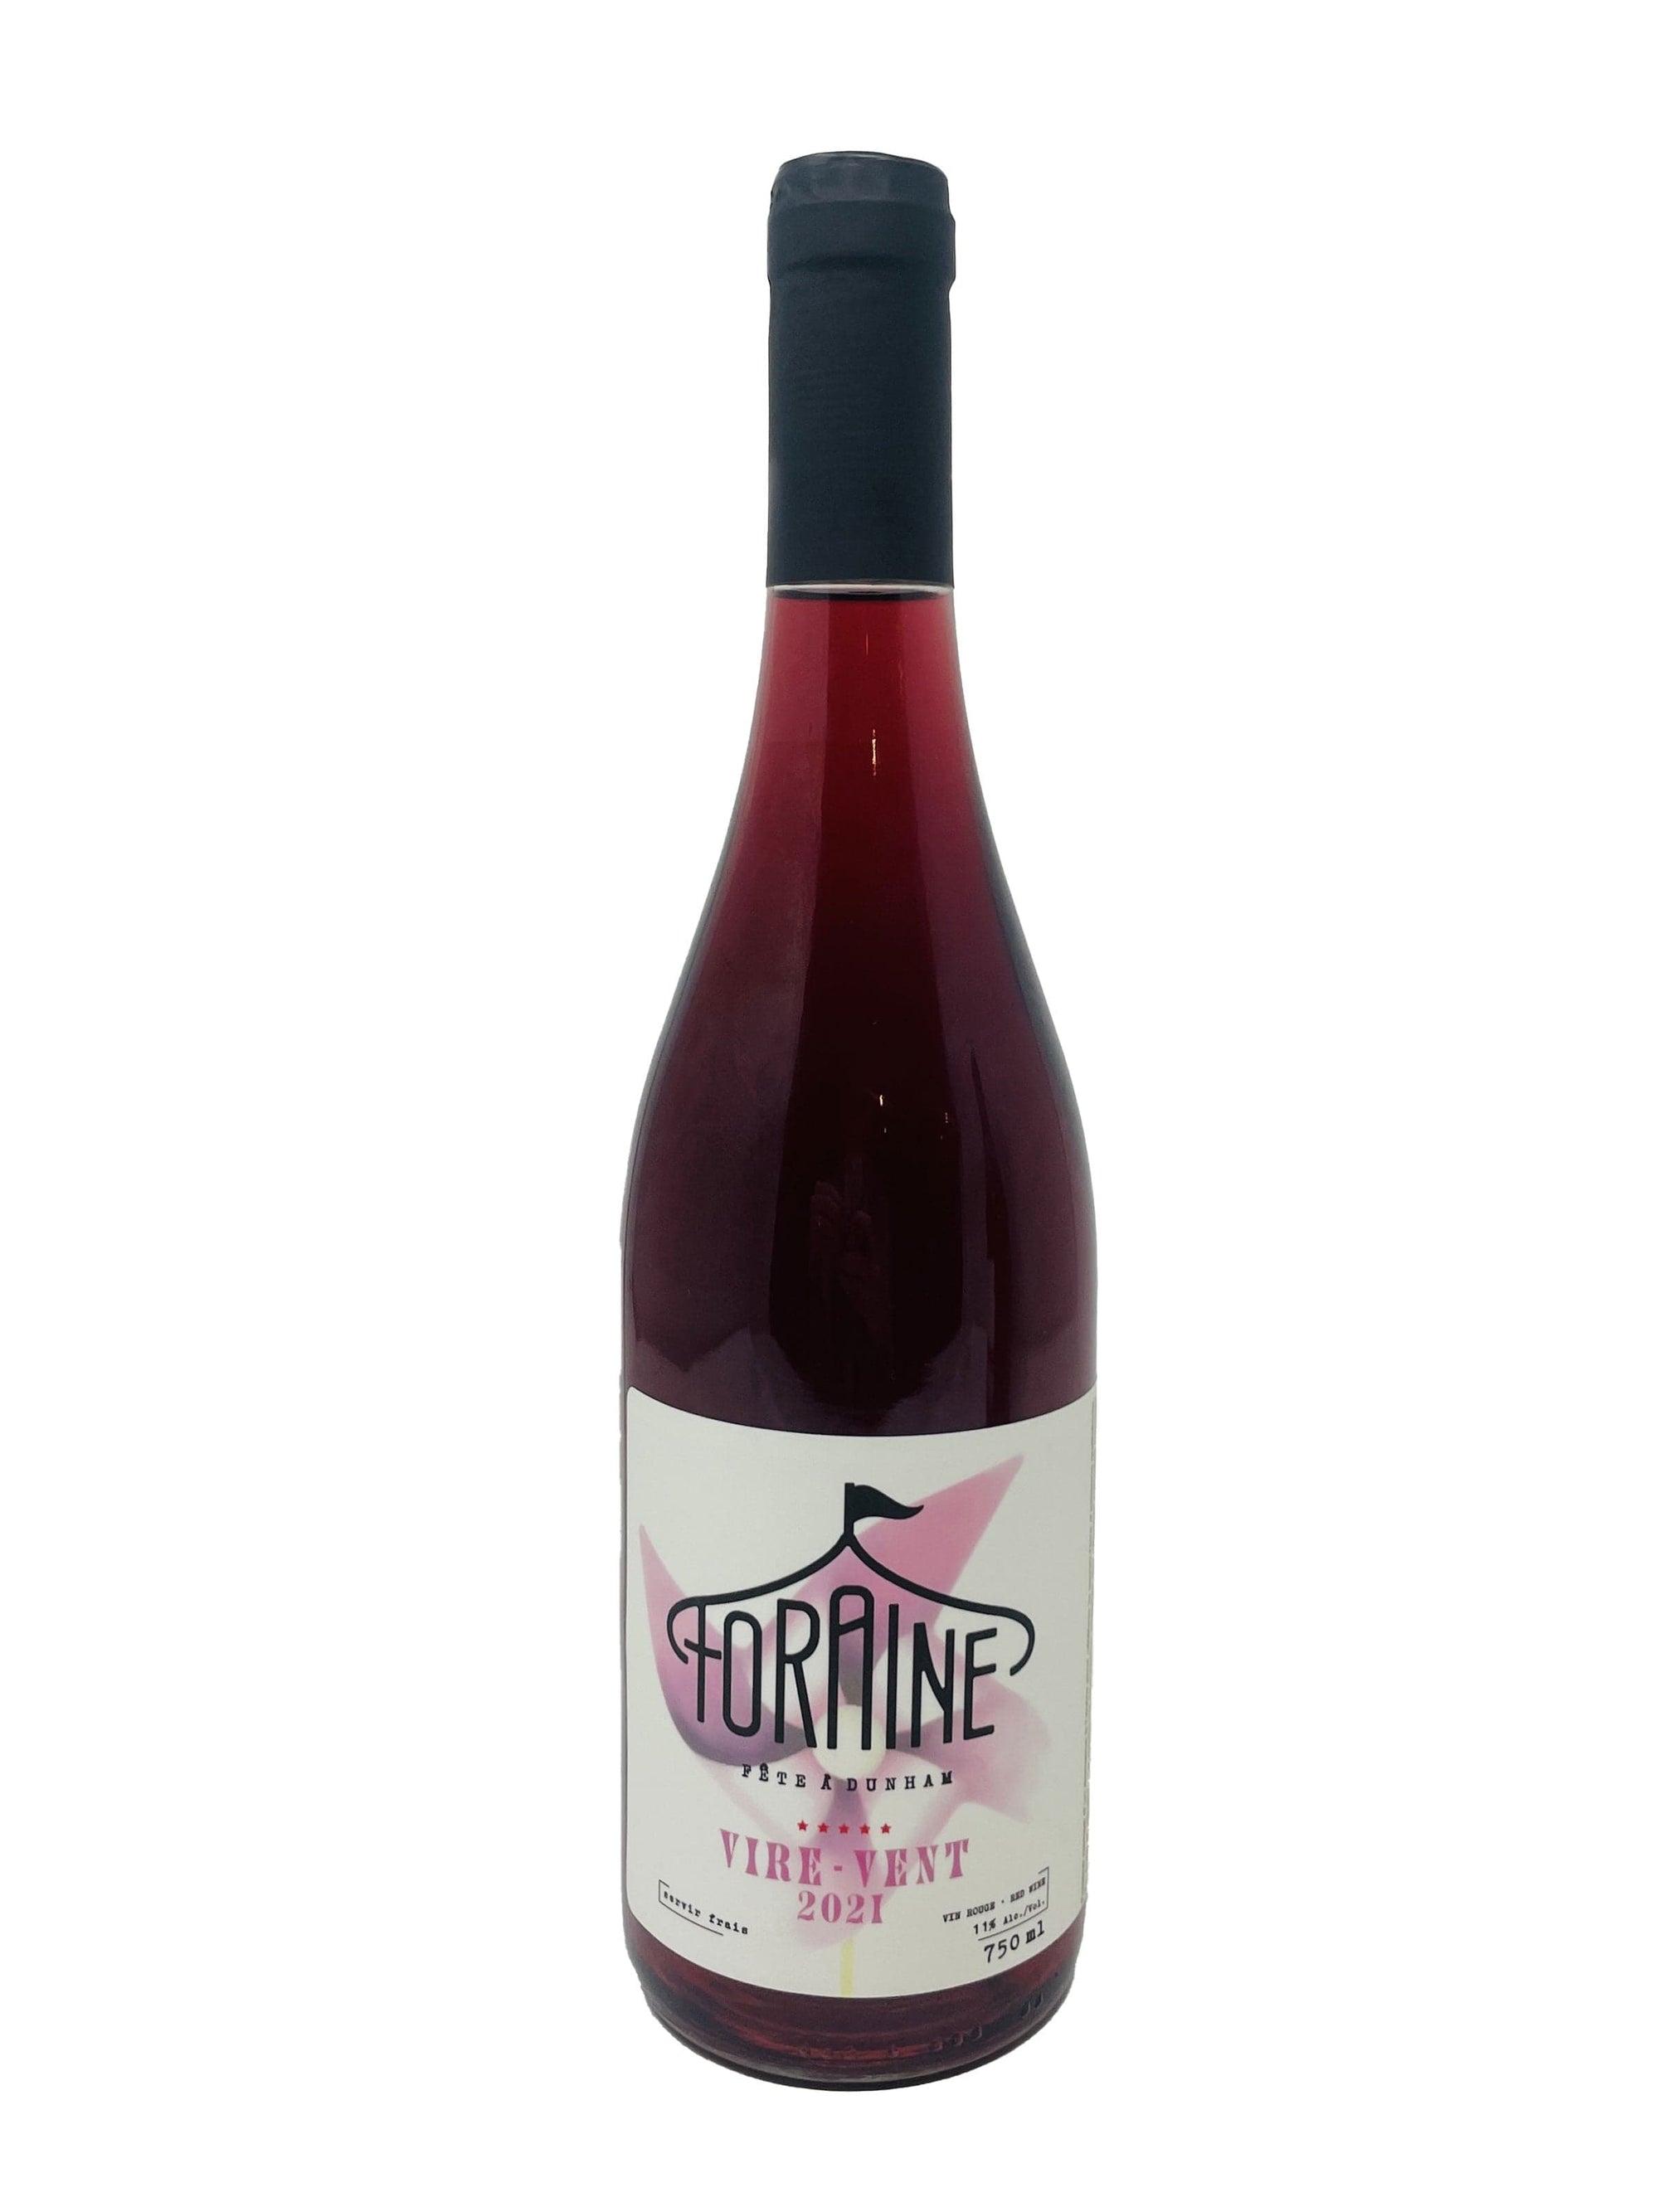 Vignoble Château de Cartes Vin Foraine Vire-vent 2021 - Vin Rouge du Vignoble Château de Cartes